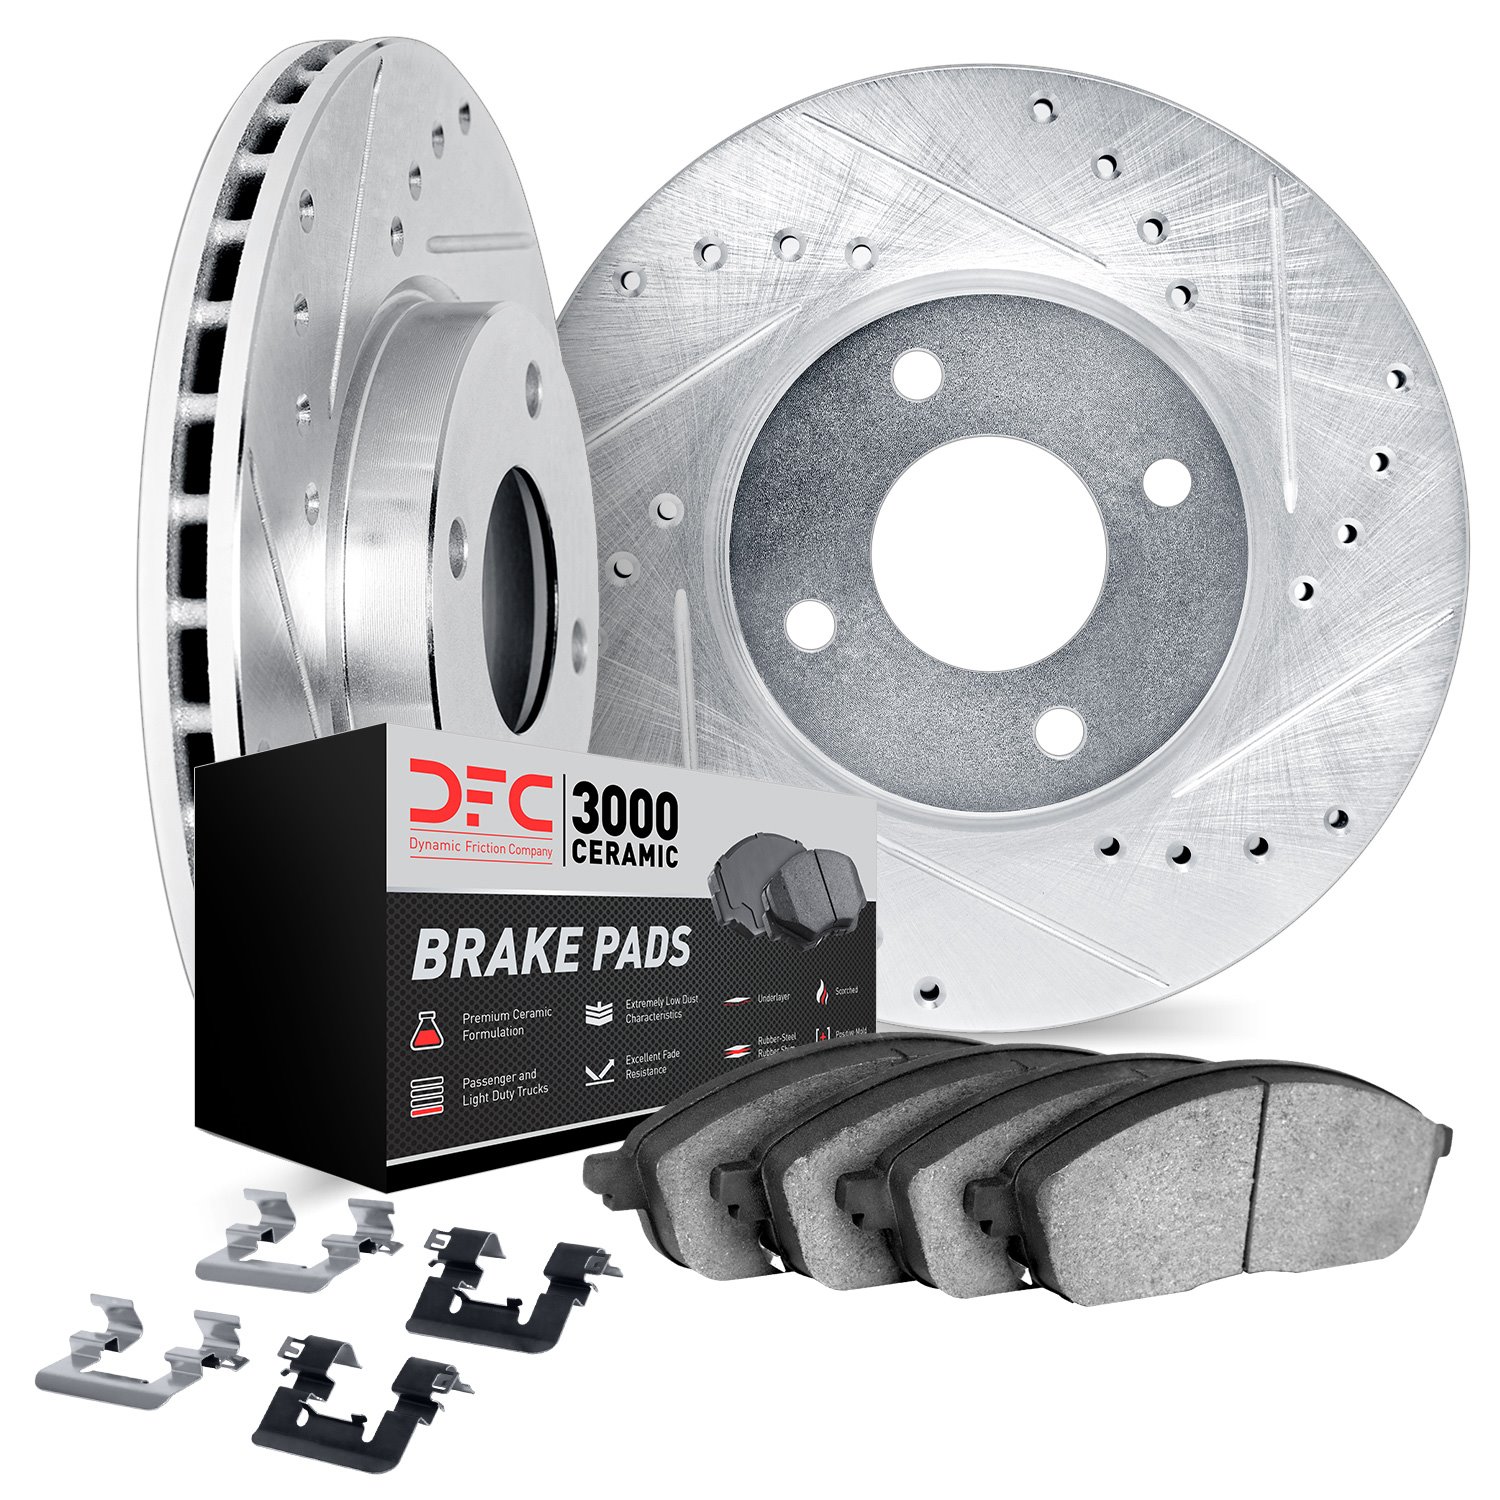 7312-67088 Drilled/Slotted Brake Rotor with 3000-Series Ceramic Brake Pads Kit & Hardware [Silver], 2007-2014 Infiniti/Nissan, P